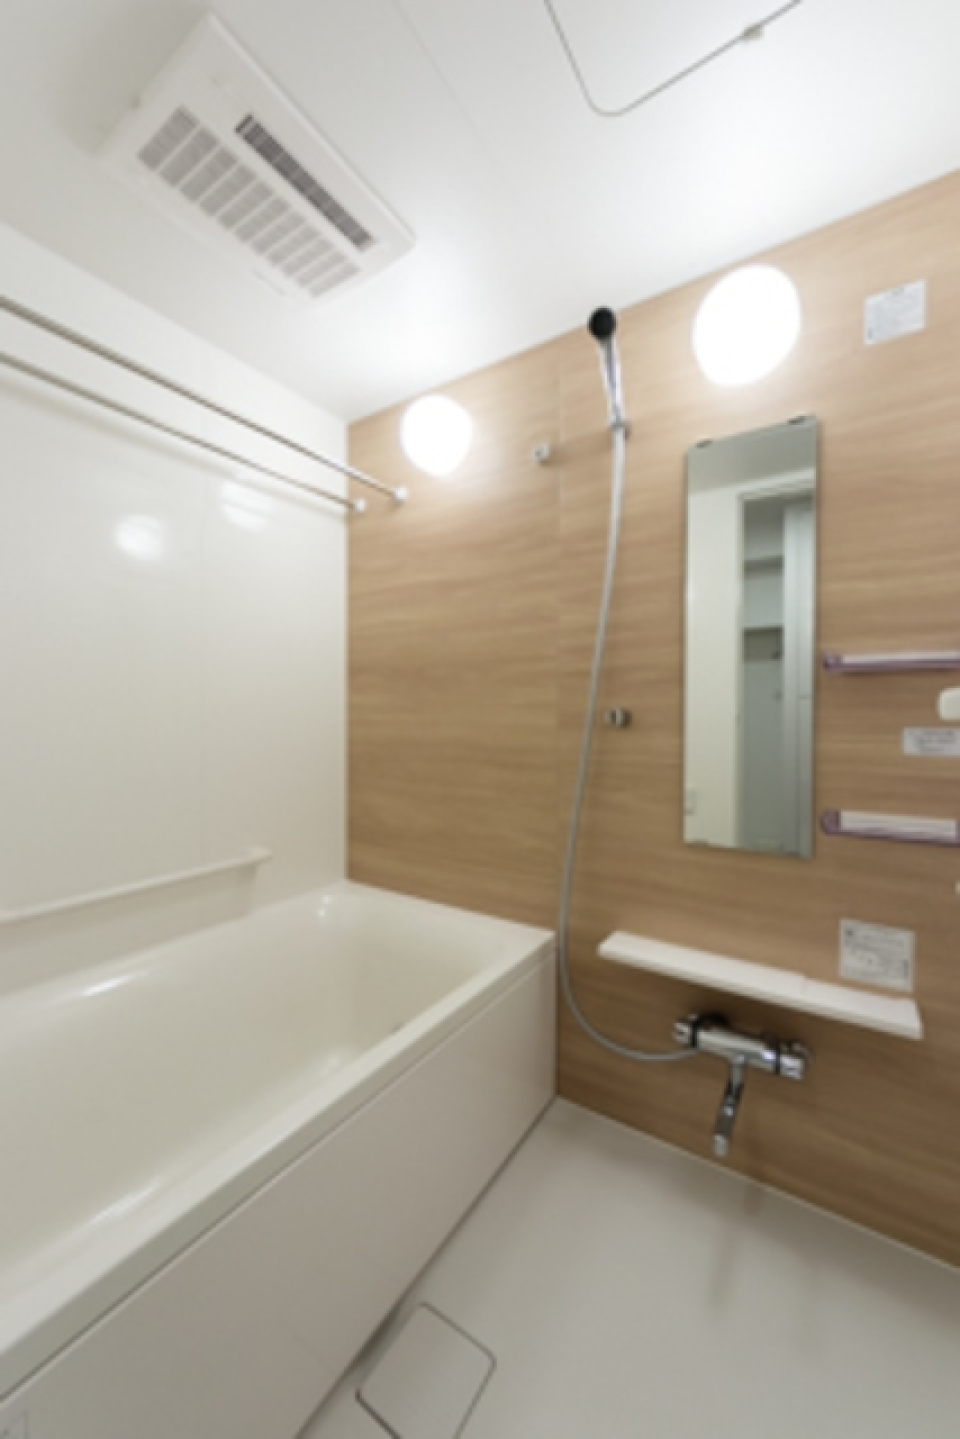 ナチュラルなパネルが導入された浴室です。※写真は同タイプ住戸です。